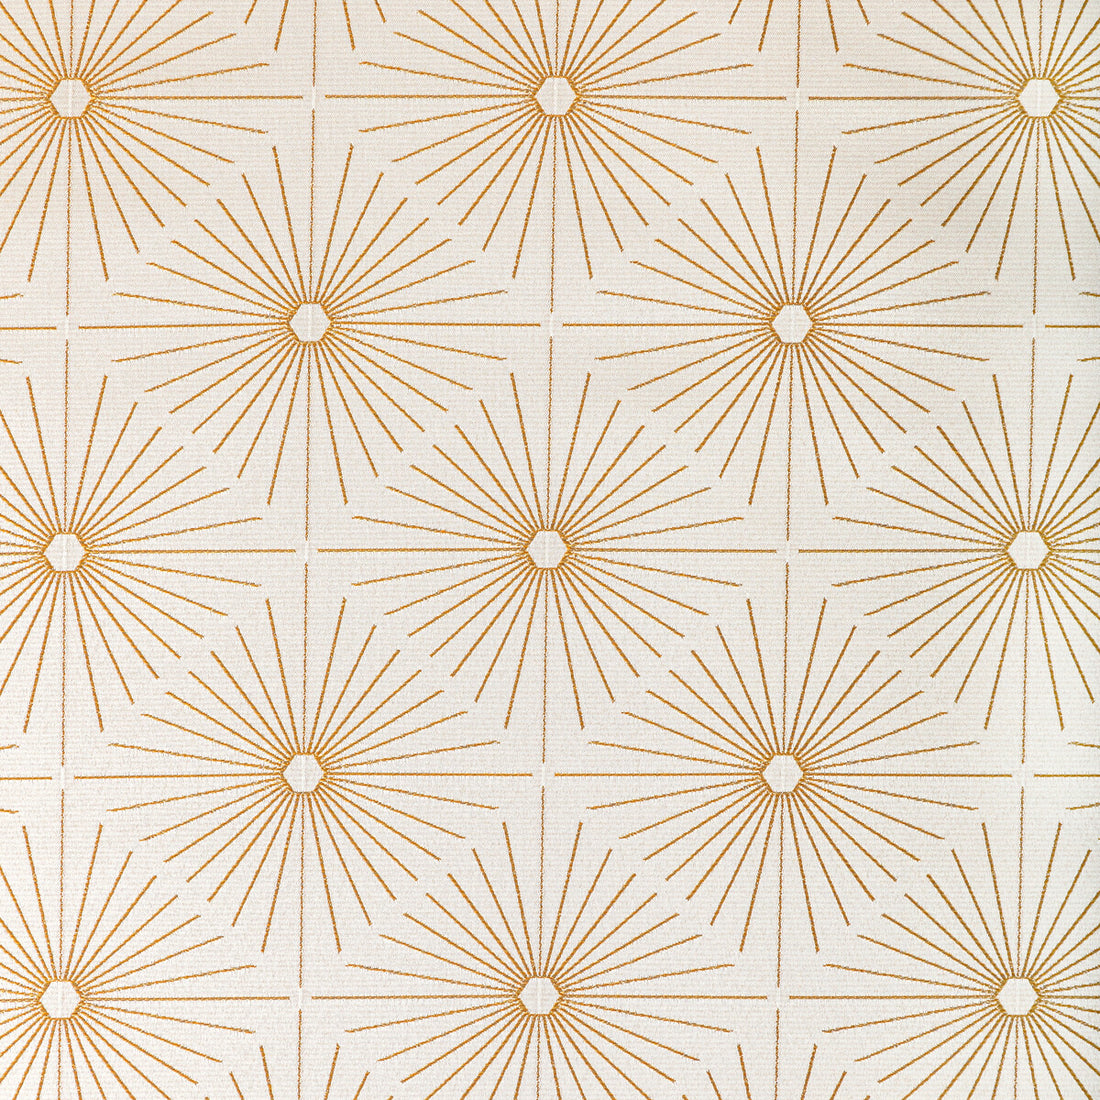 Kravet Design fabric in 36751-416 color - pattern 36751.416.0 - by Kravet Design